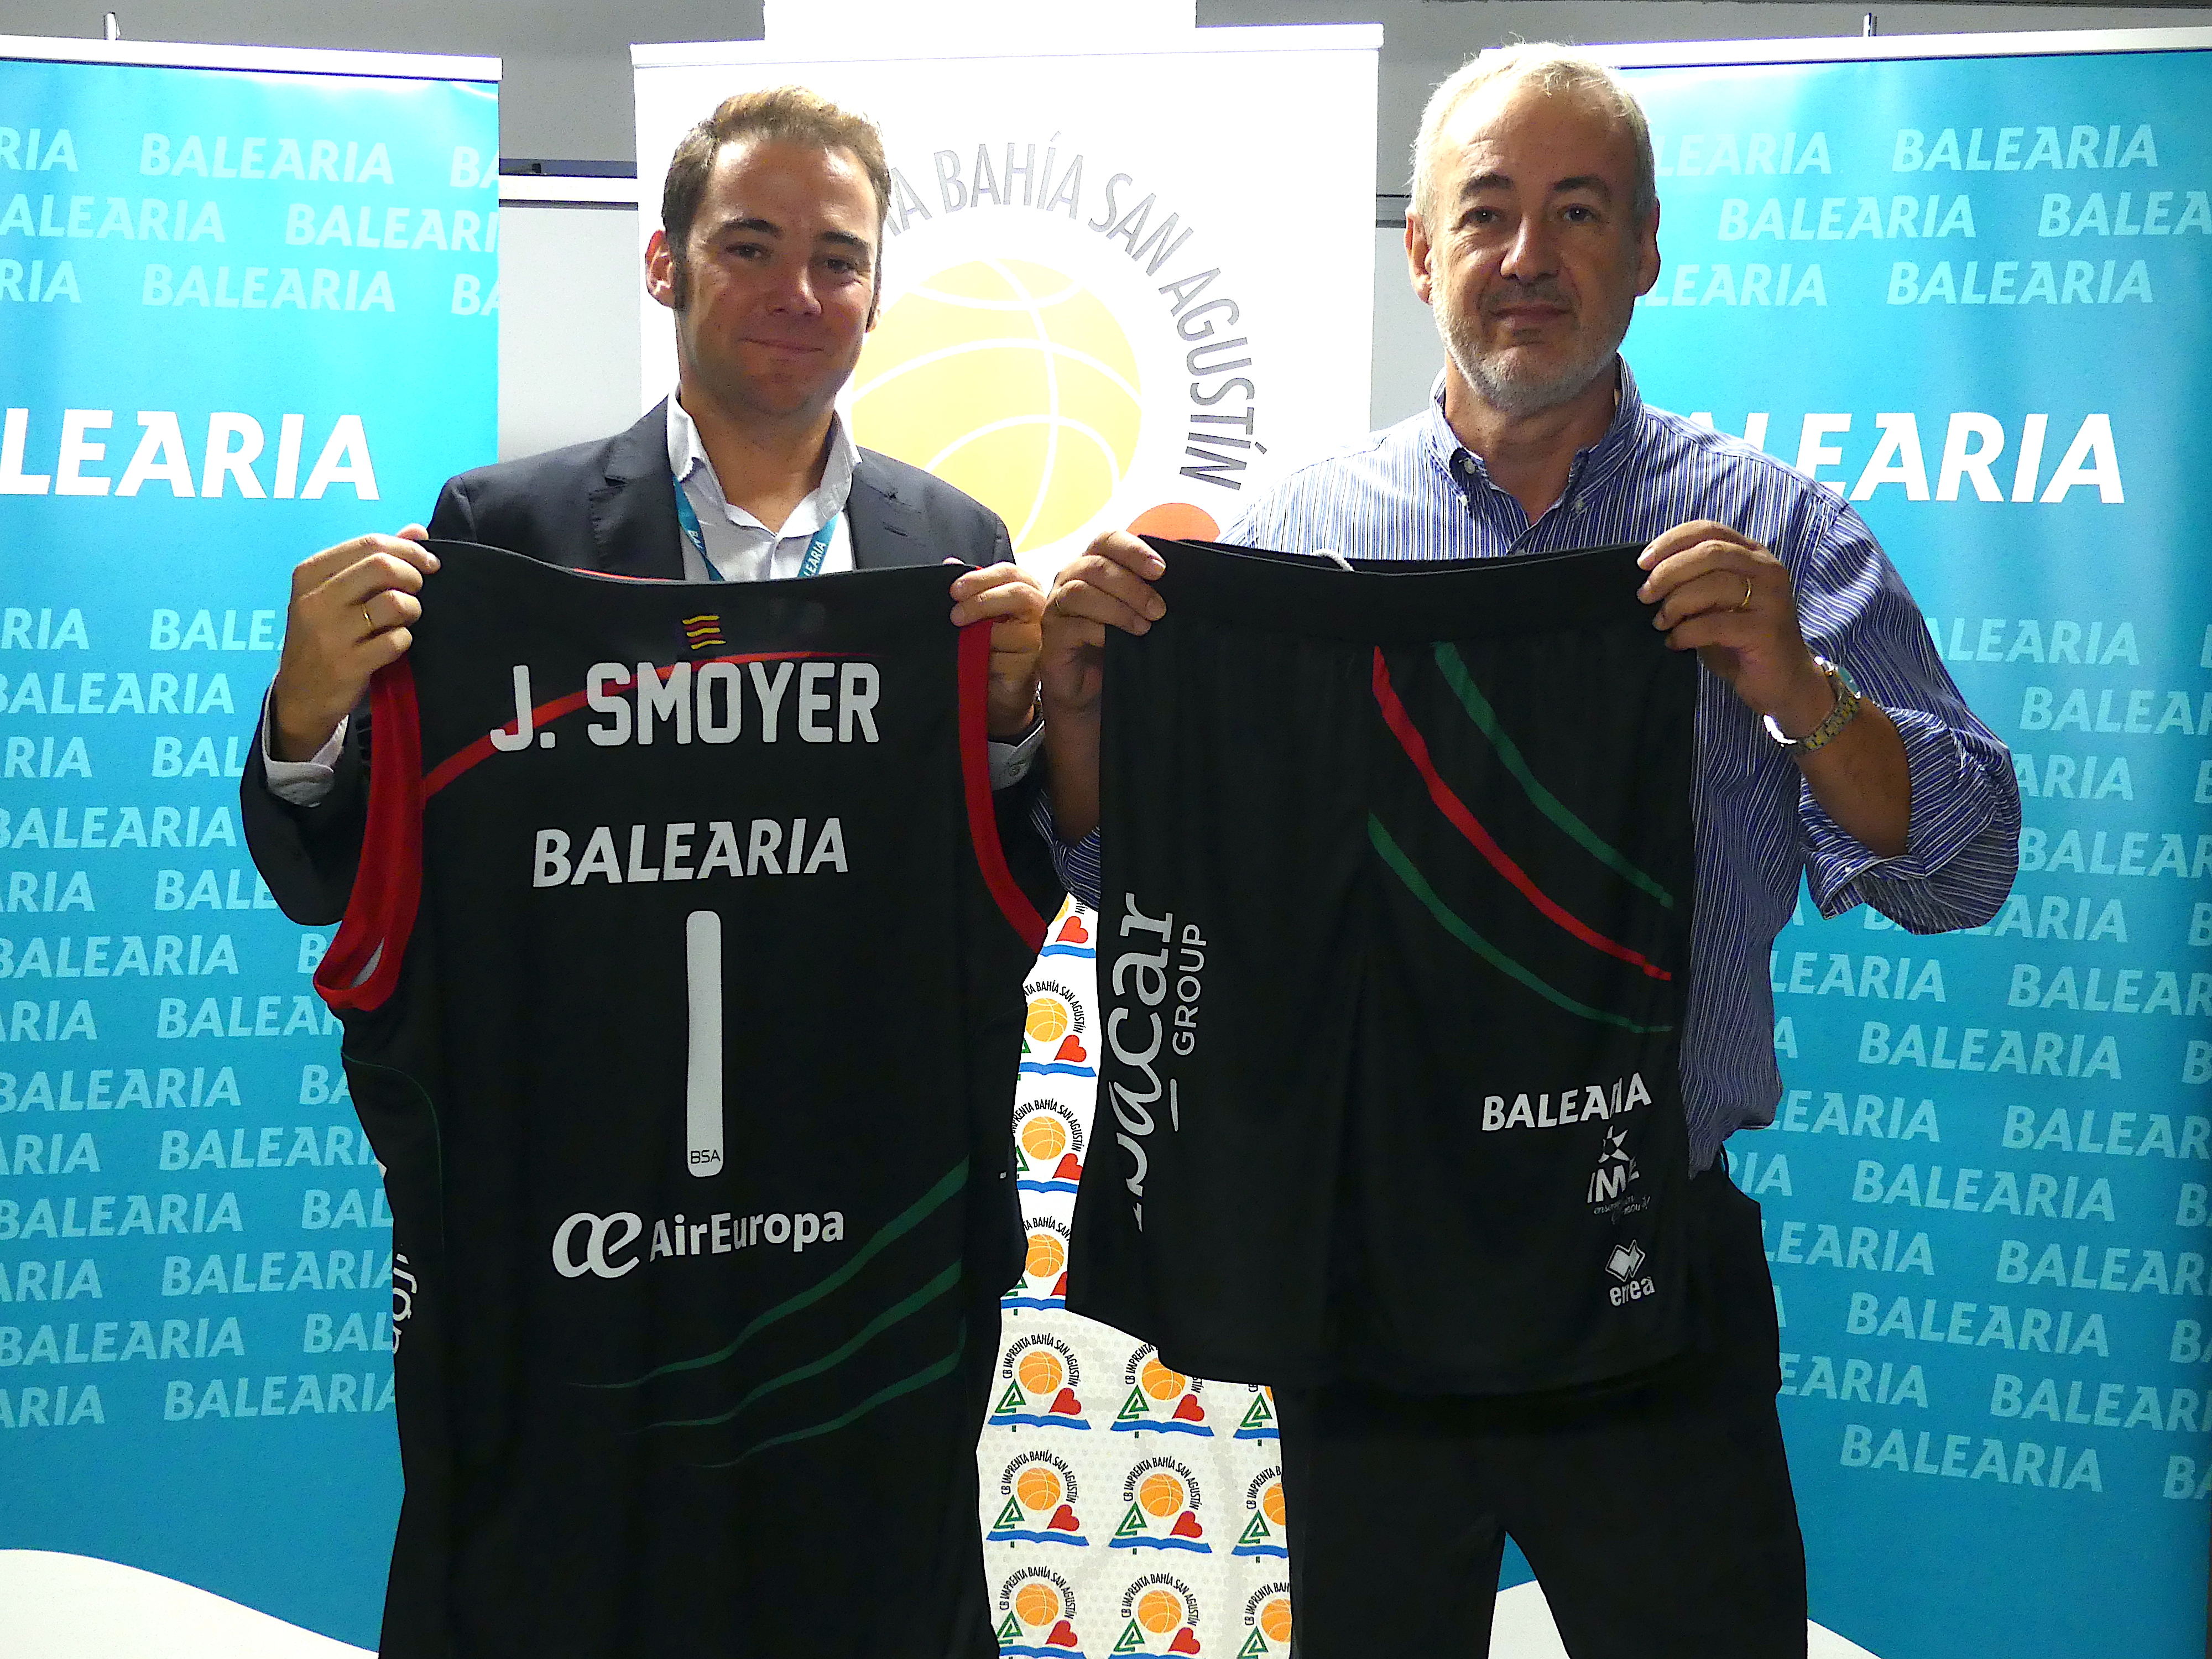 Jaime de la Puente y Guillermo Bosscana posando con la equipacin y logo de Balearia